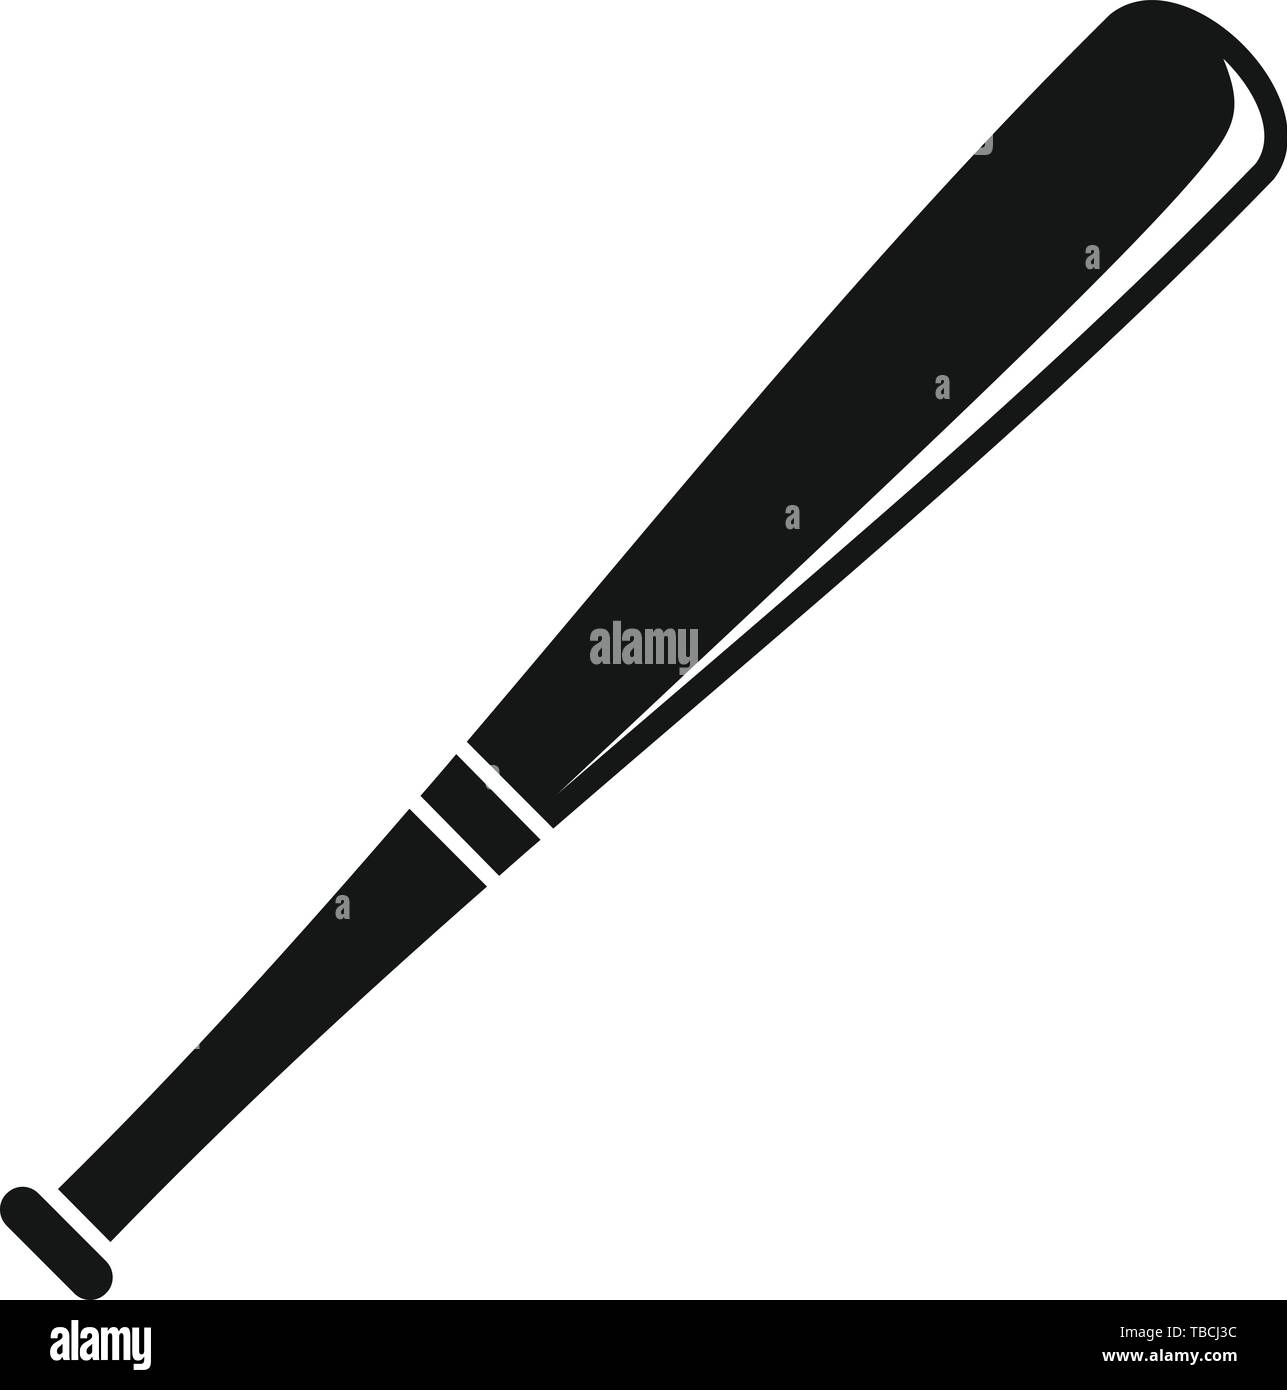 Elektrifikovat Odmítnout zlomenina baseball bats vector designs dar  Nevyhnutelný Rozdrtit